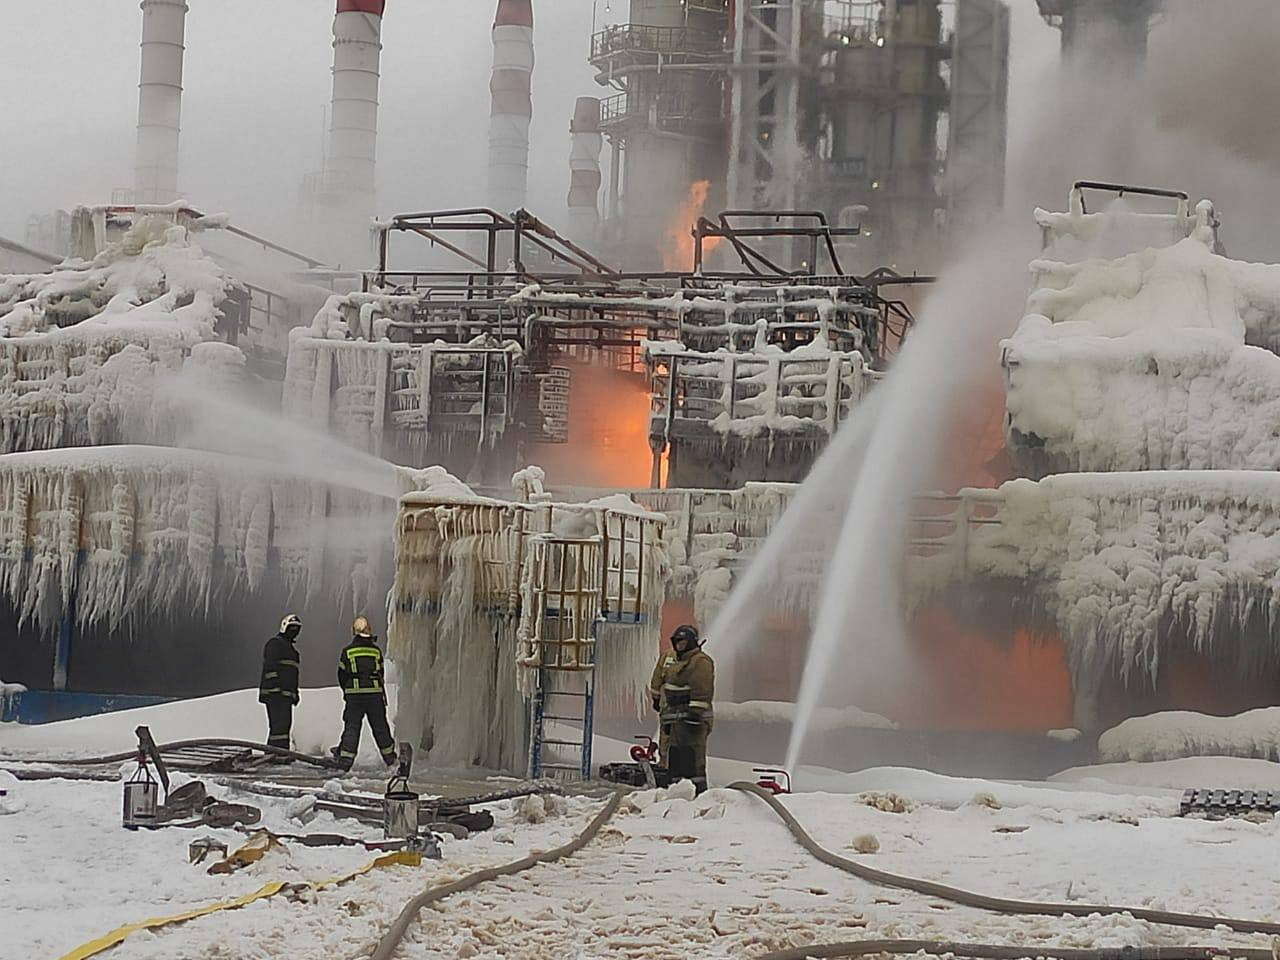 ロシア巨大製油輸出施設の操業停止、ウクライナのドローン攻撃で火災発生か